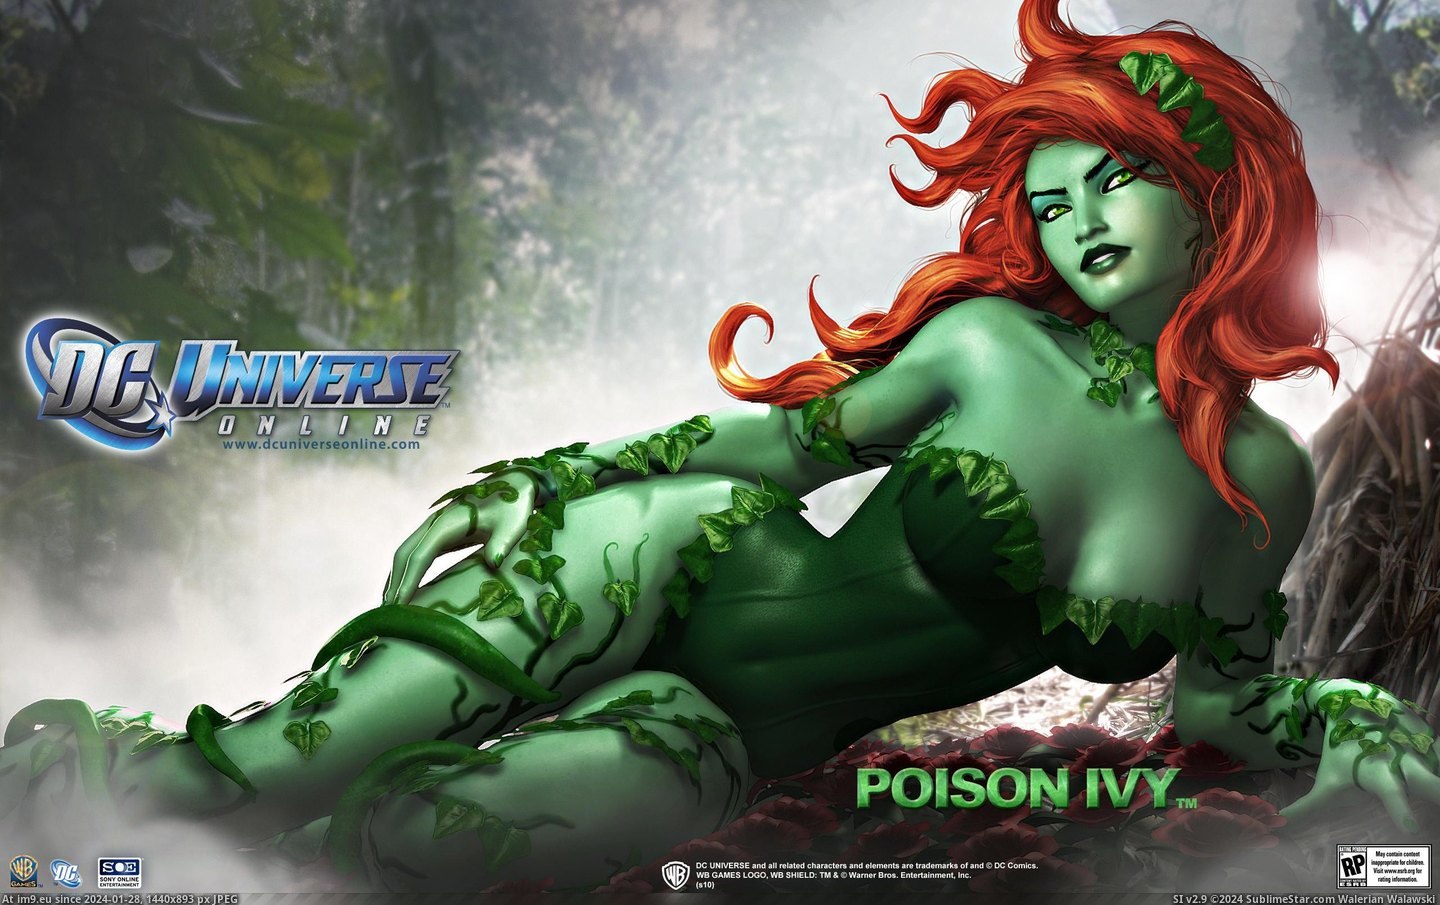 #Wallpaper #Wide #Universe #Poison #Ivy Dc Universe Poison Ivy Wide HD Wallpaper Pic. (Изображение из альбом Unique HD Wallpapers))